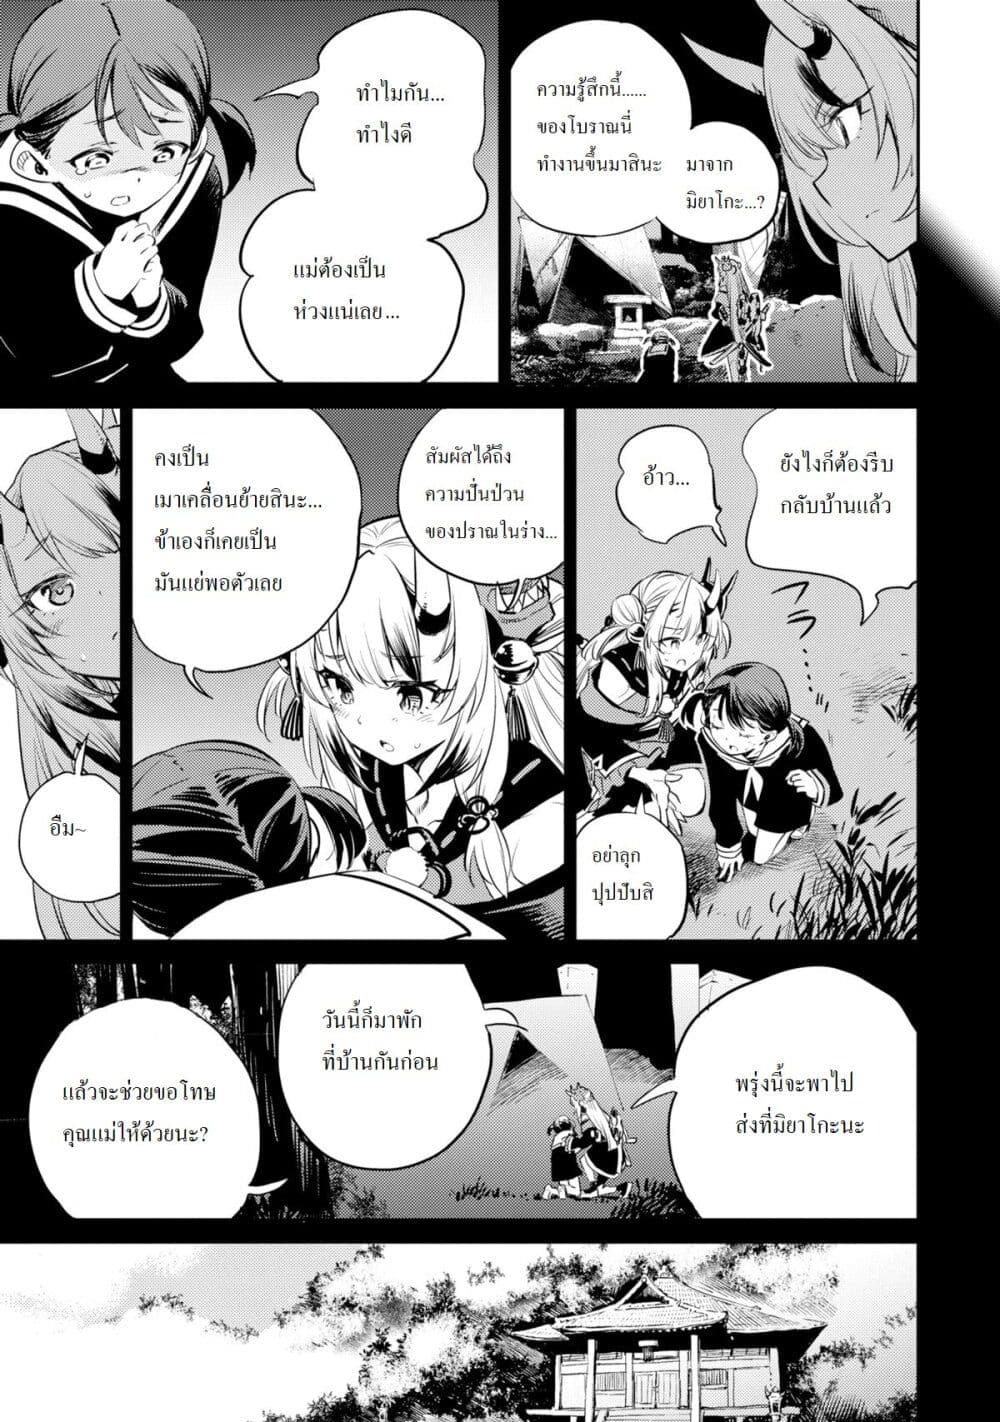 Holoearth Chronicles SideE ~Yamato Phantasia~ ตอนที่ 11 (11)